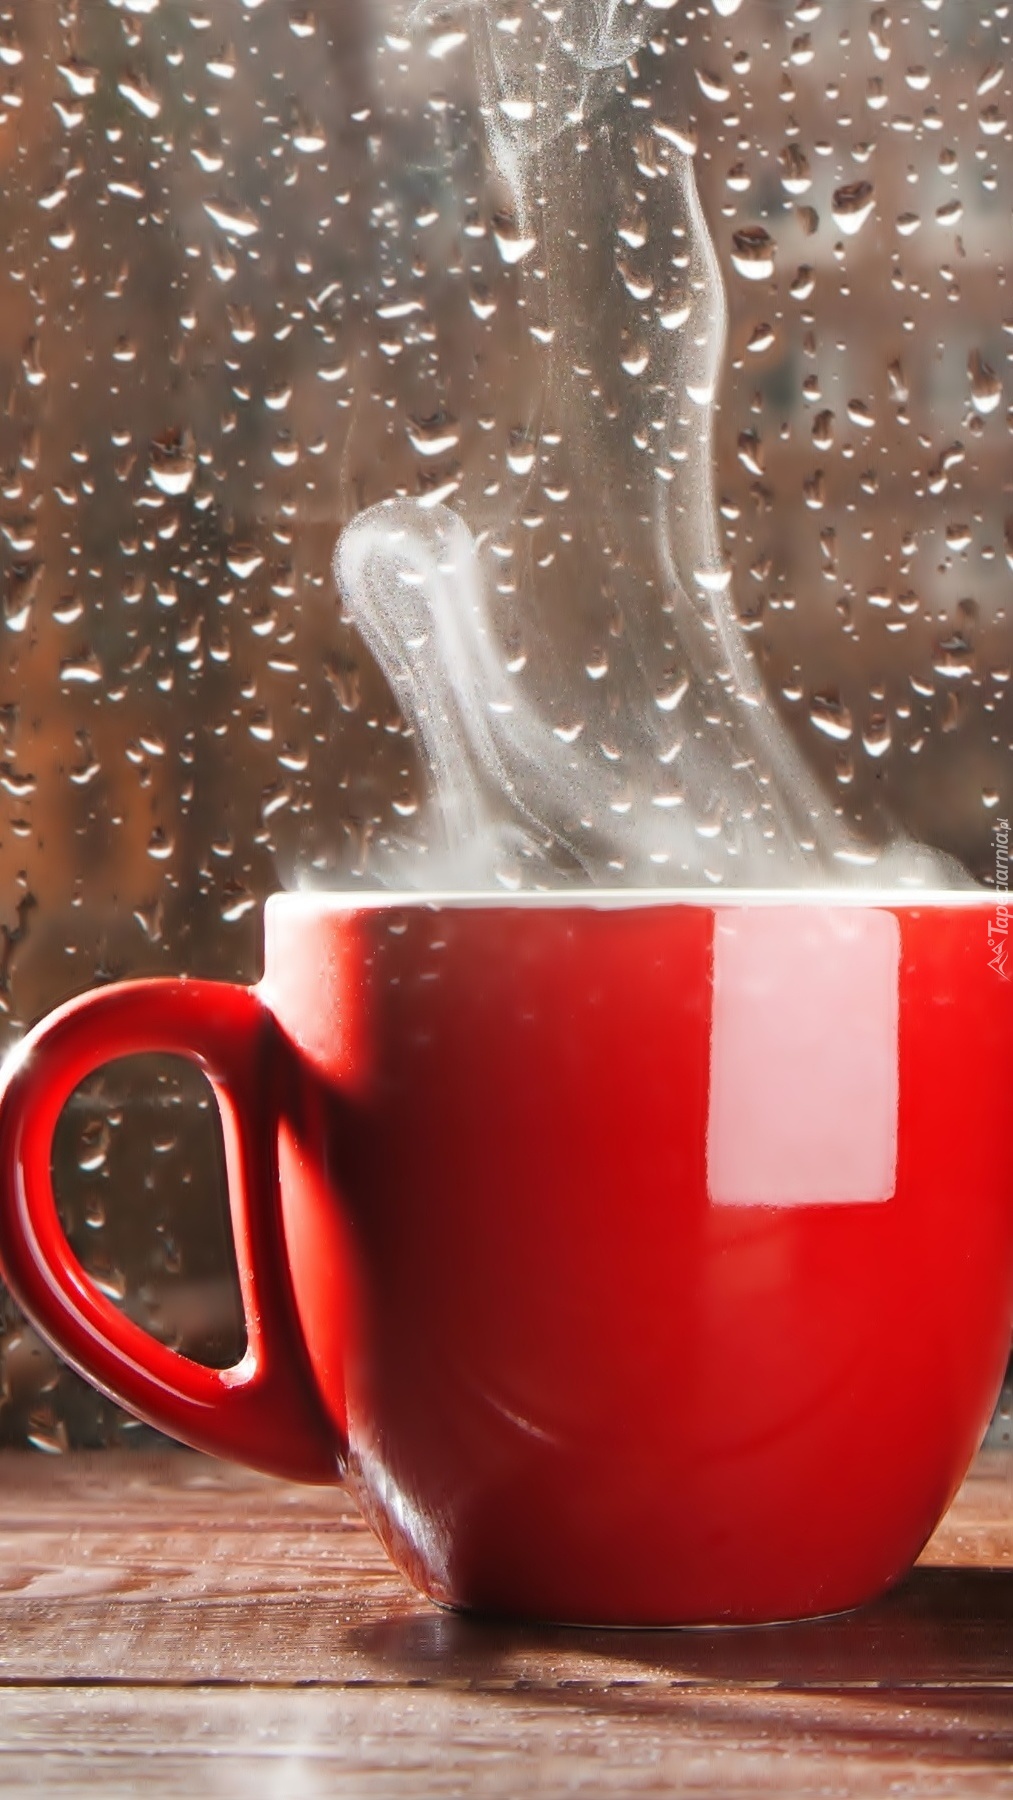 Kawa w czerwonej filiżance przy szybie w kroplach deszczu